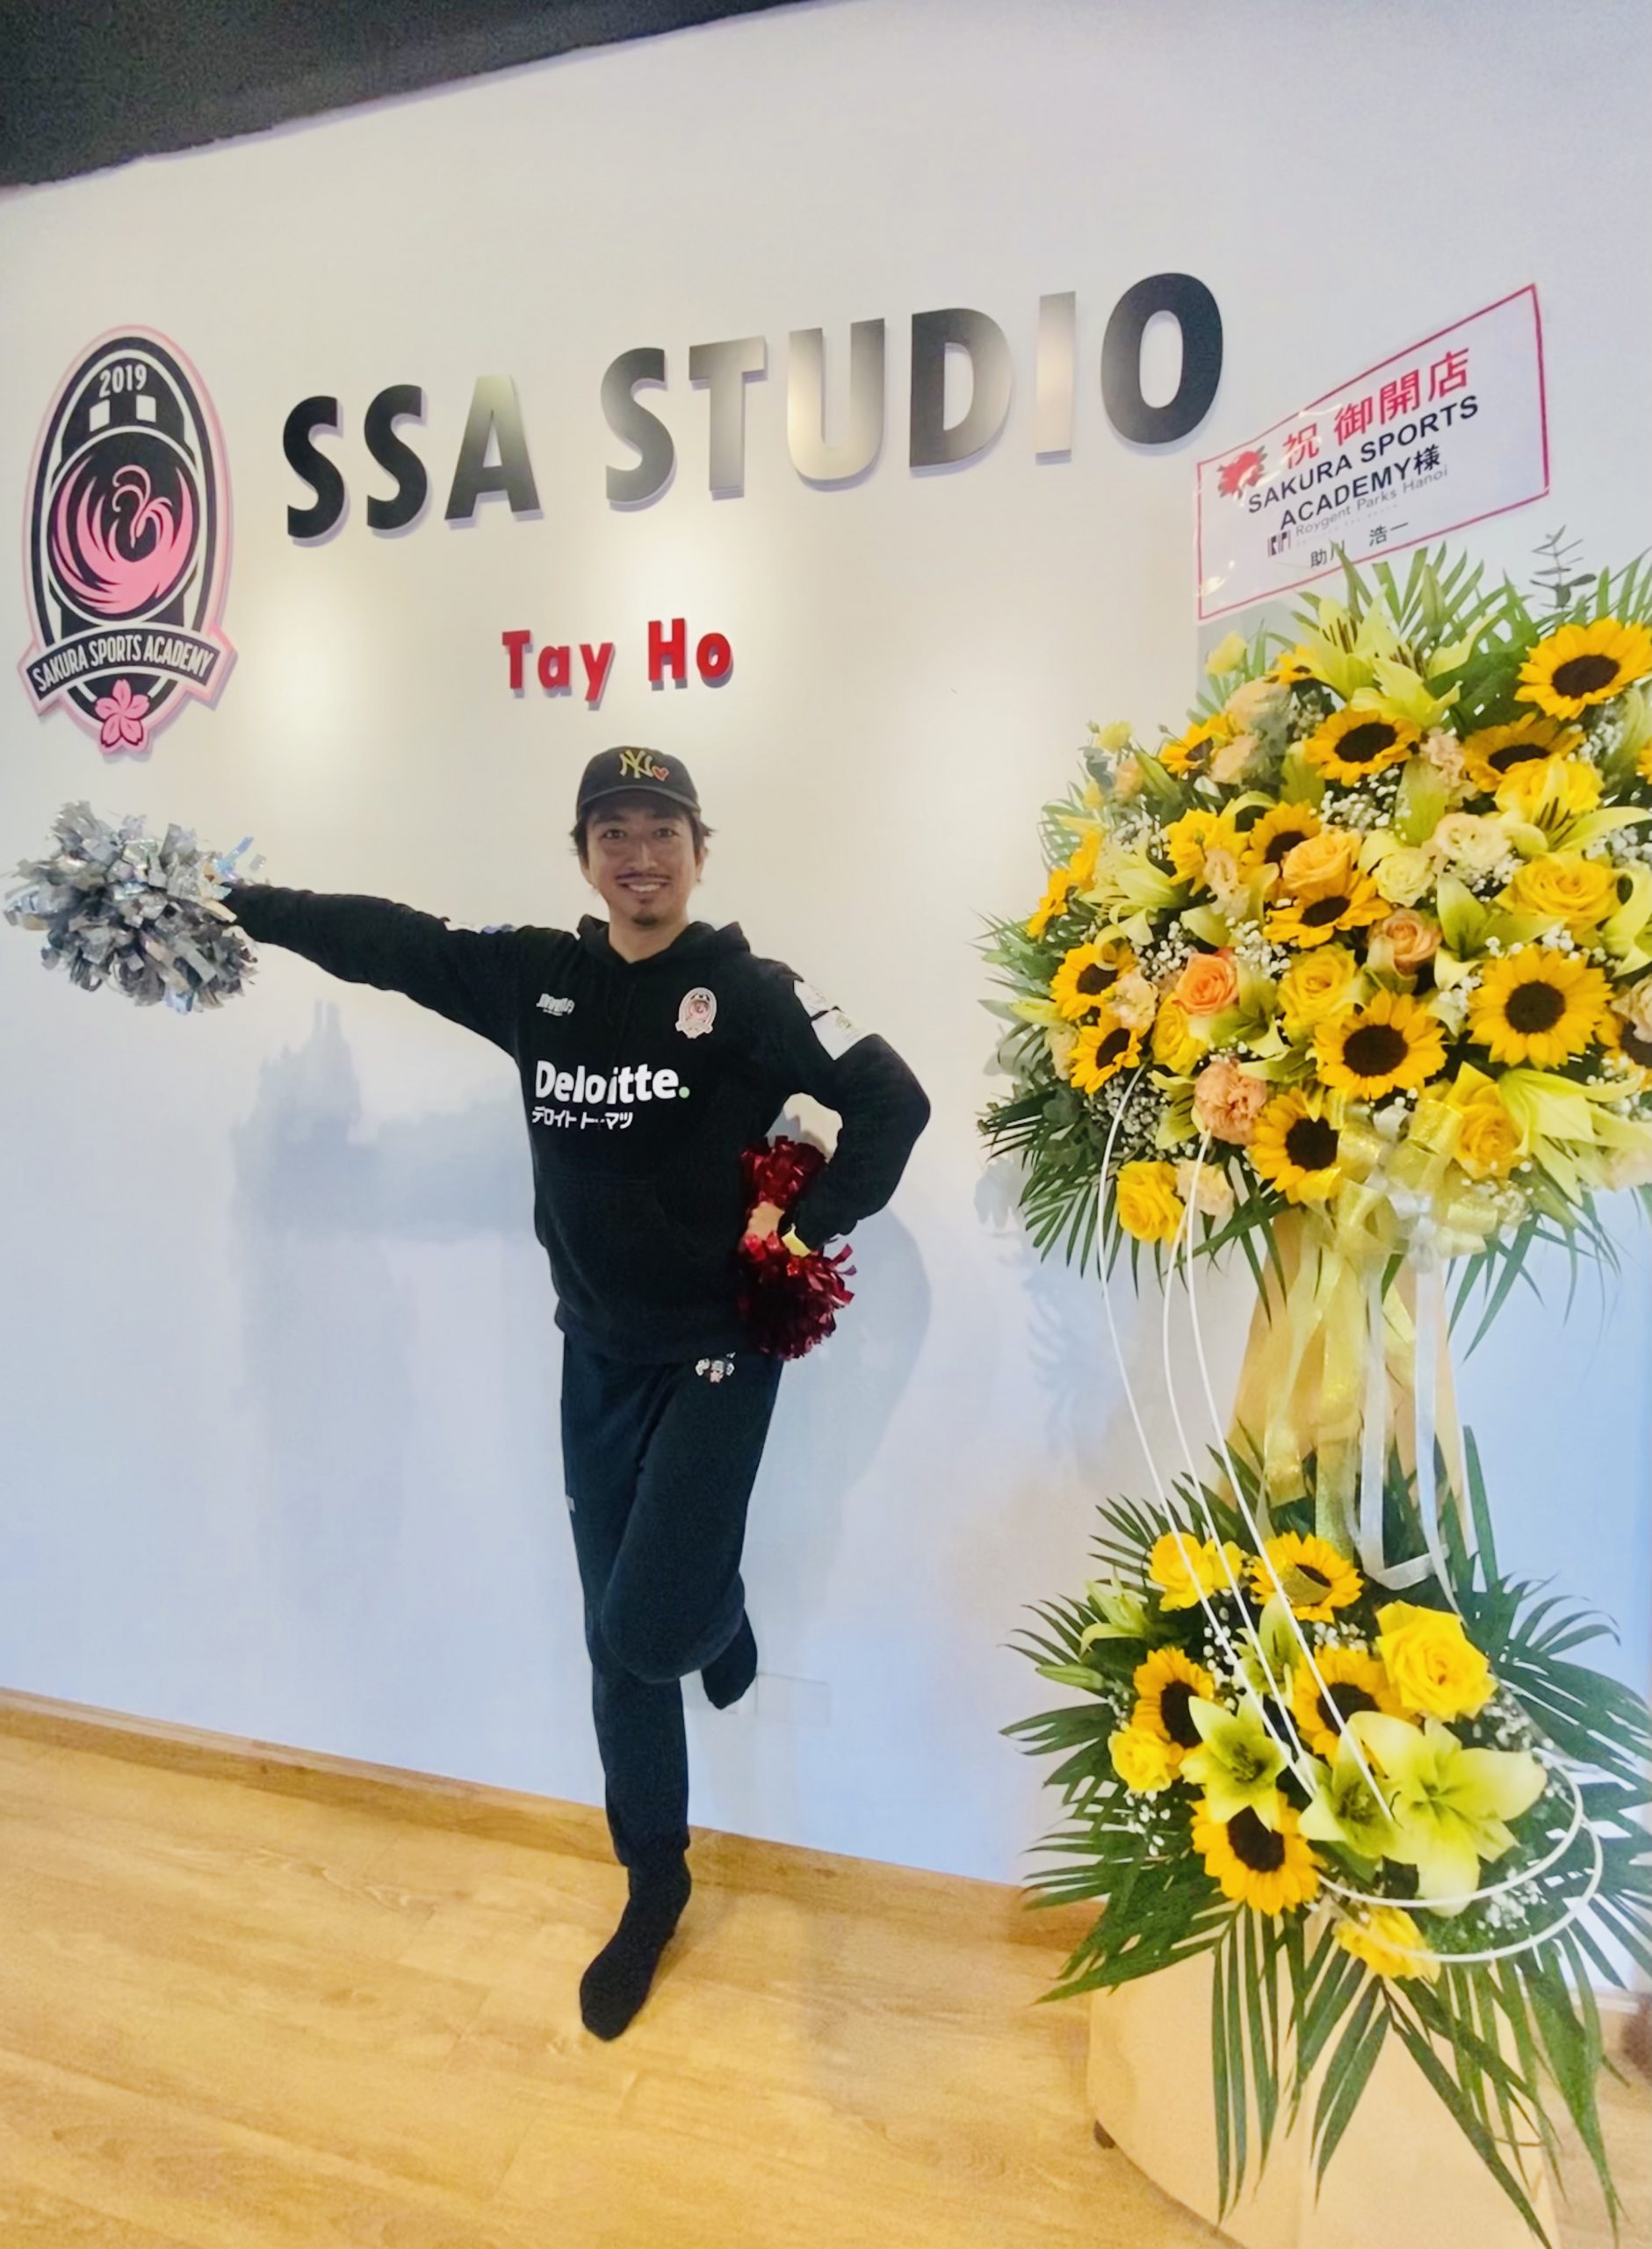 Chúc mừng ★ SSA Studio Tây Hồ chính thức khai trương !!!